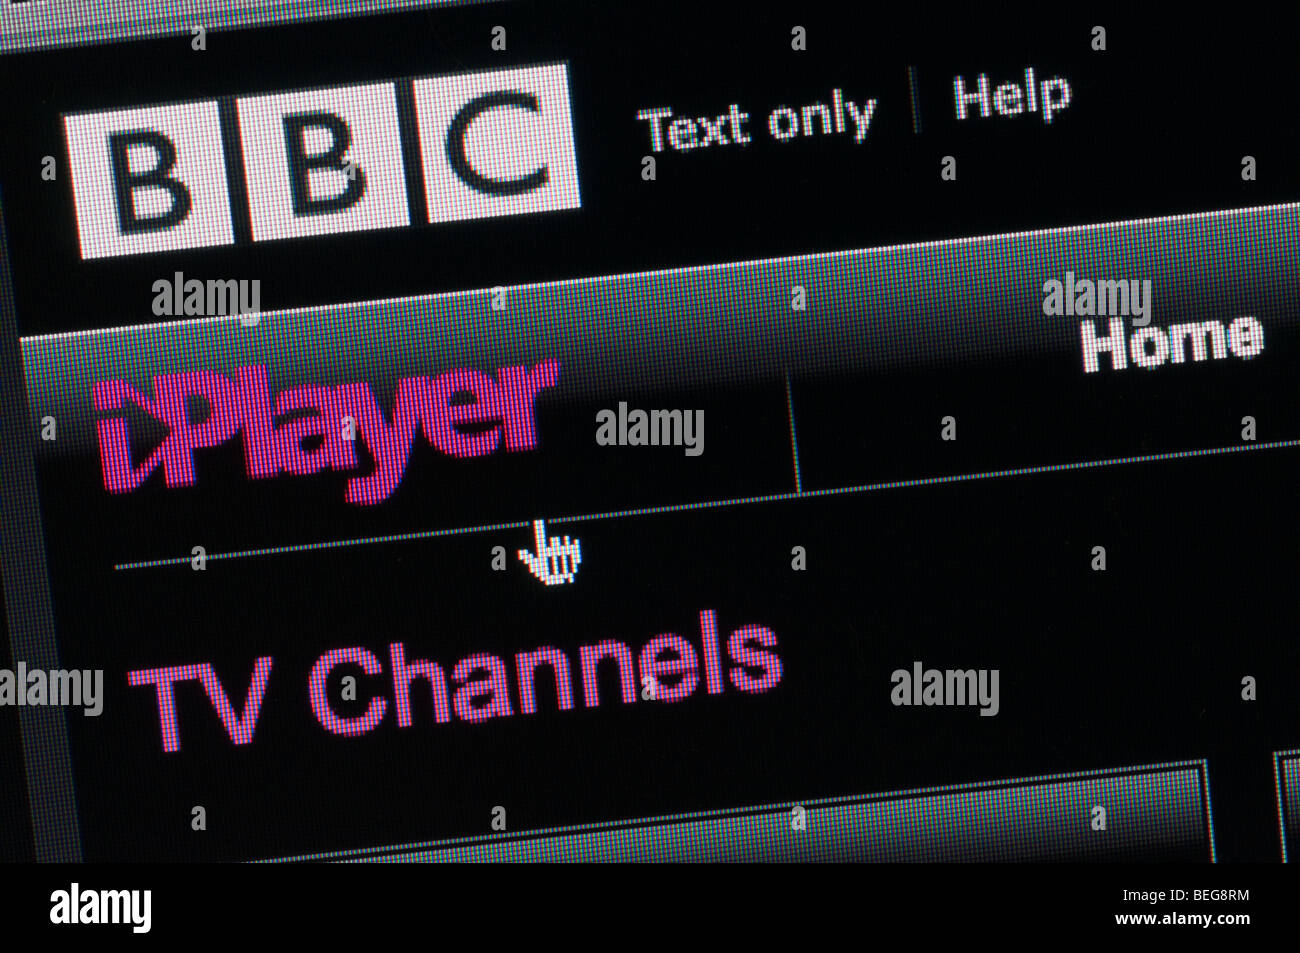 BBC iPlayer screenshot Stock Photo